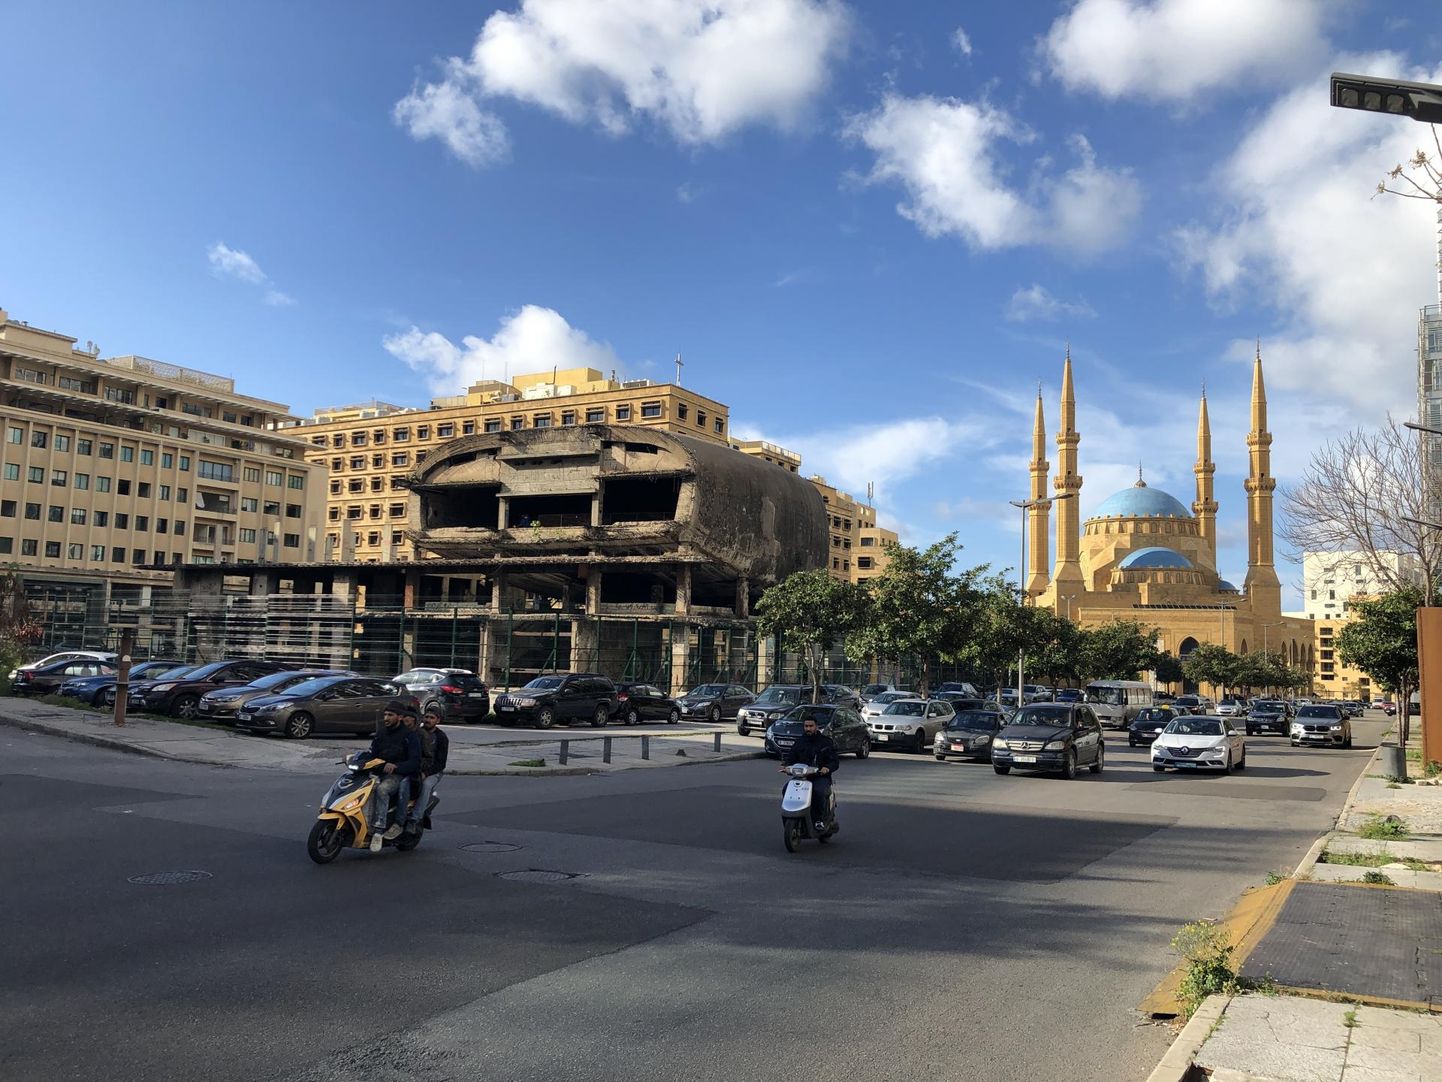 Liibanoni pealinna Beiruti kirju arhitektuuriga kesklinn: kirikute ja mošeede vahelt leiab lõpetamata arhitektuurinäidiseid. Pildil Beirutis sõja tõttu pooleli jäänud ooperimaja.